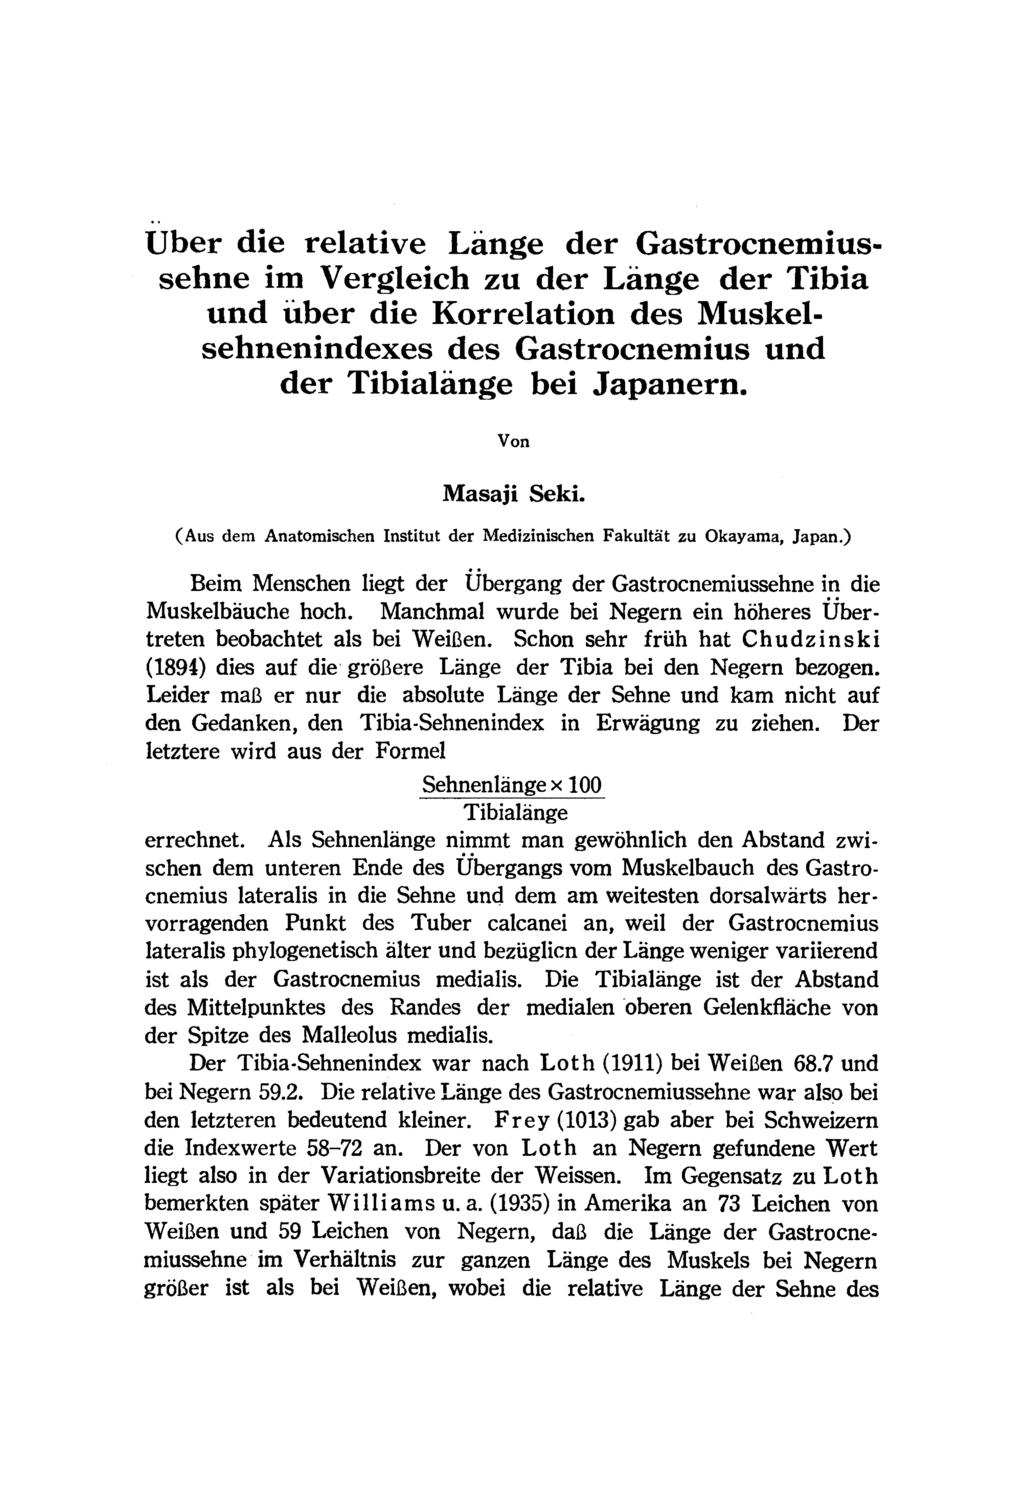 Uber die relative Lange der Gastrocnemiussehne im Vergleich zu der Lange der Tibia und uber die Korrelation des Muskelsehnenindexes des Gastrocnemius und der Tibialange bei Japanern. Von Masaji Seki.